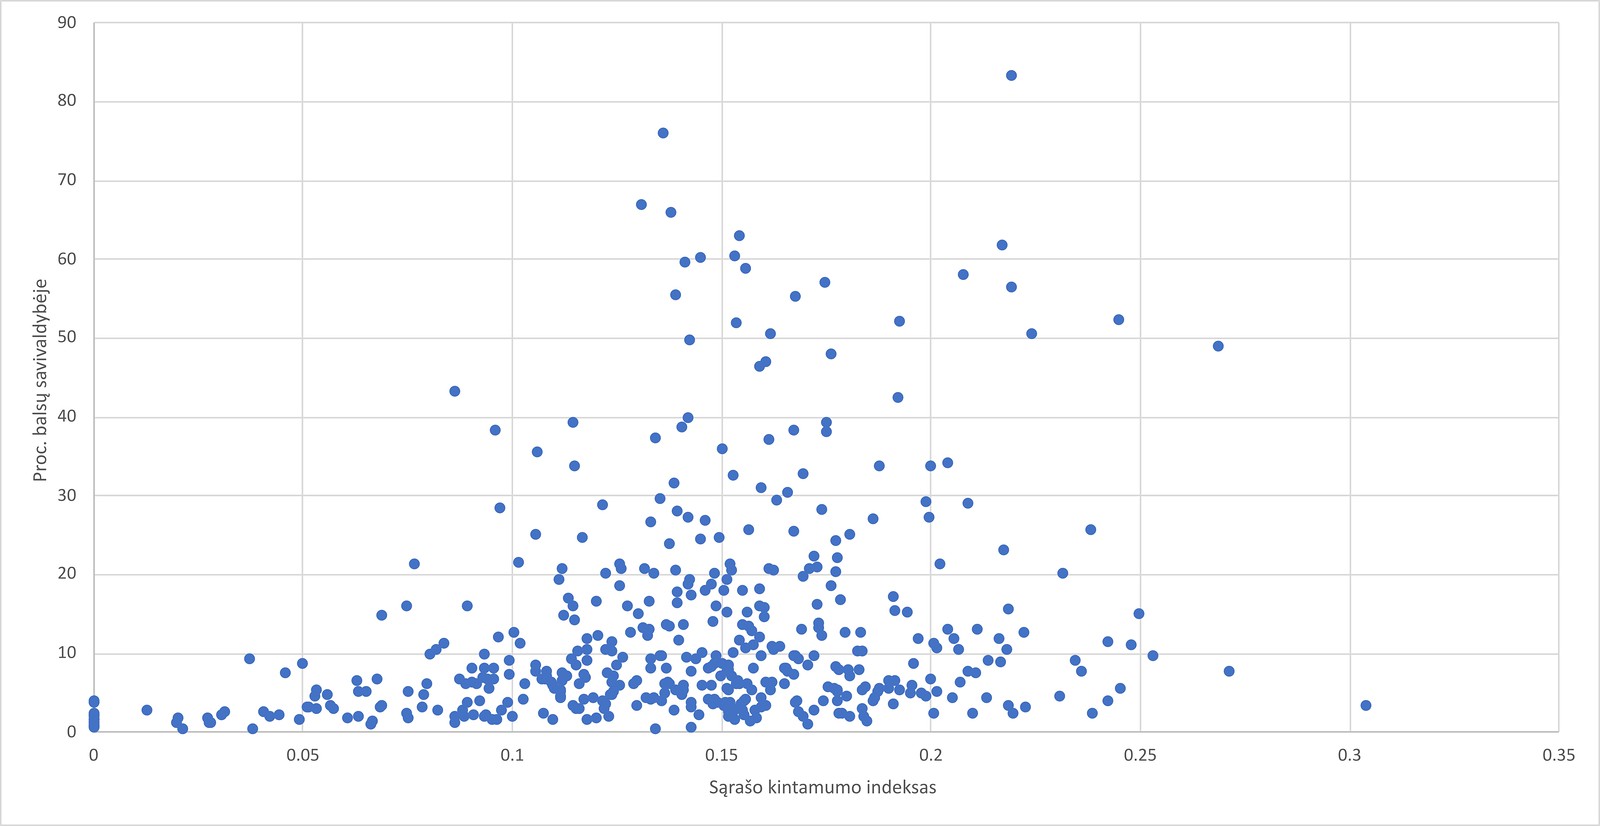 Koreliacijos paieškos tarp sąrašų kintamumo koeficiento ir gautų balsų procentų